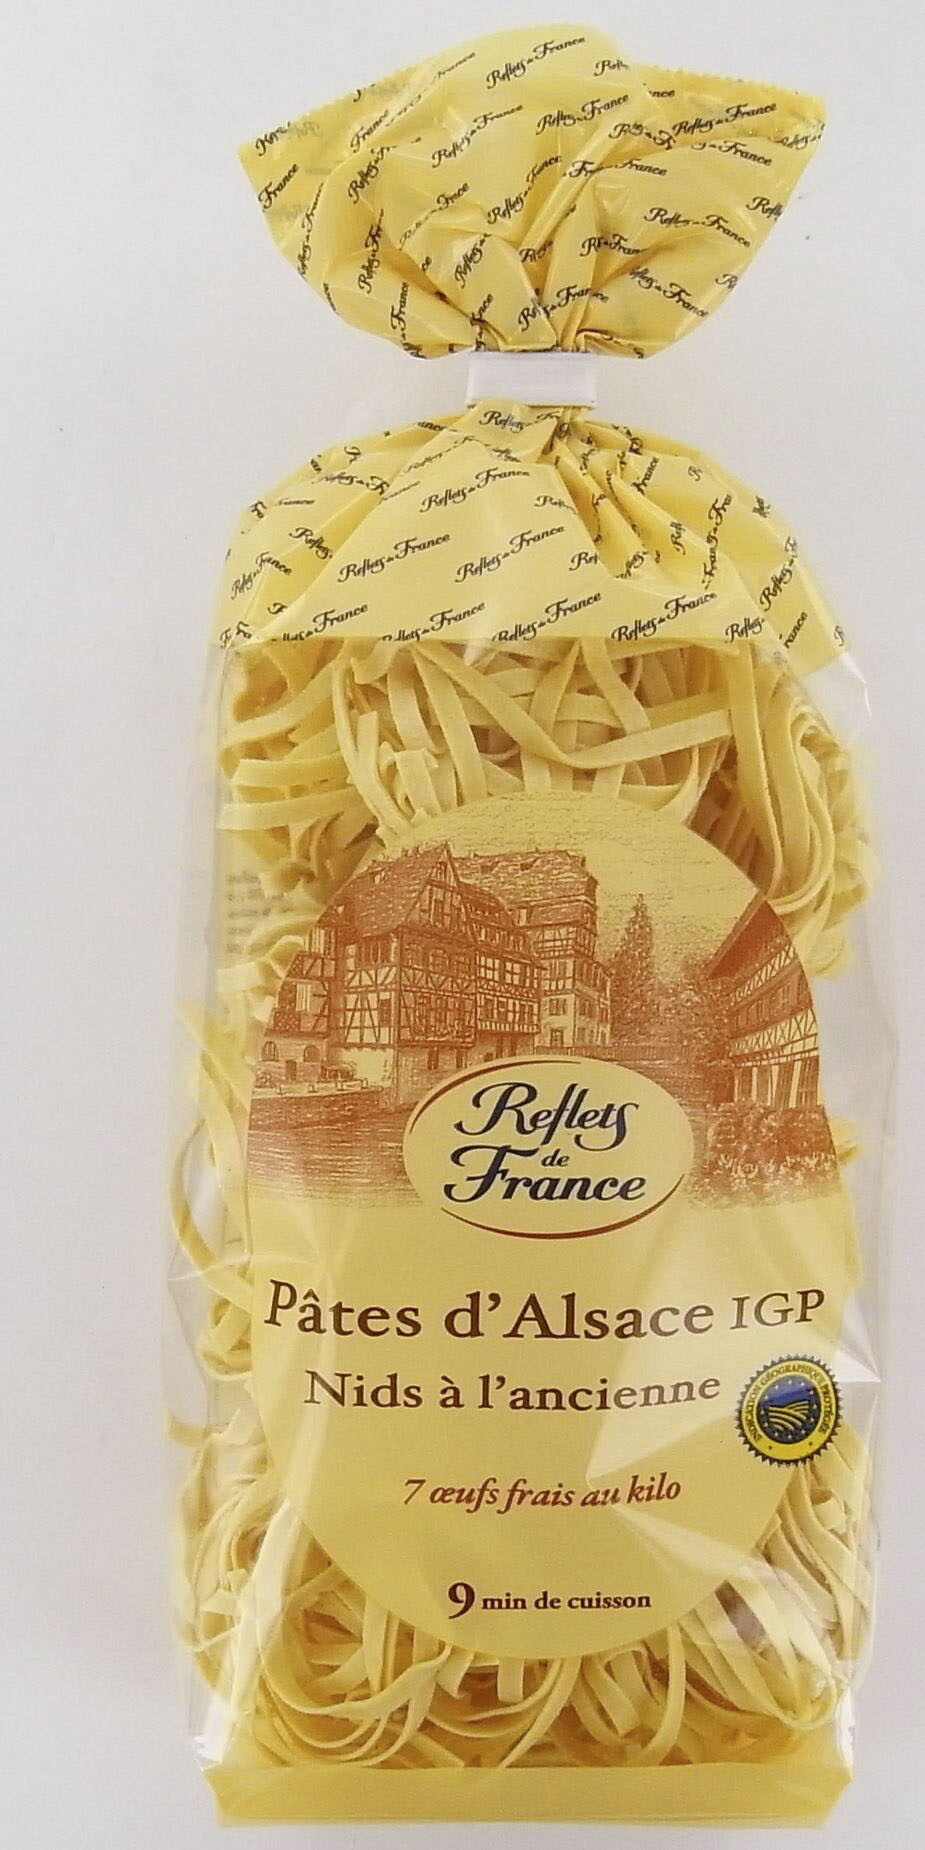 Pâtes d'Alsace IGP - Nids à l'ancienne - Product - fr